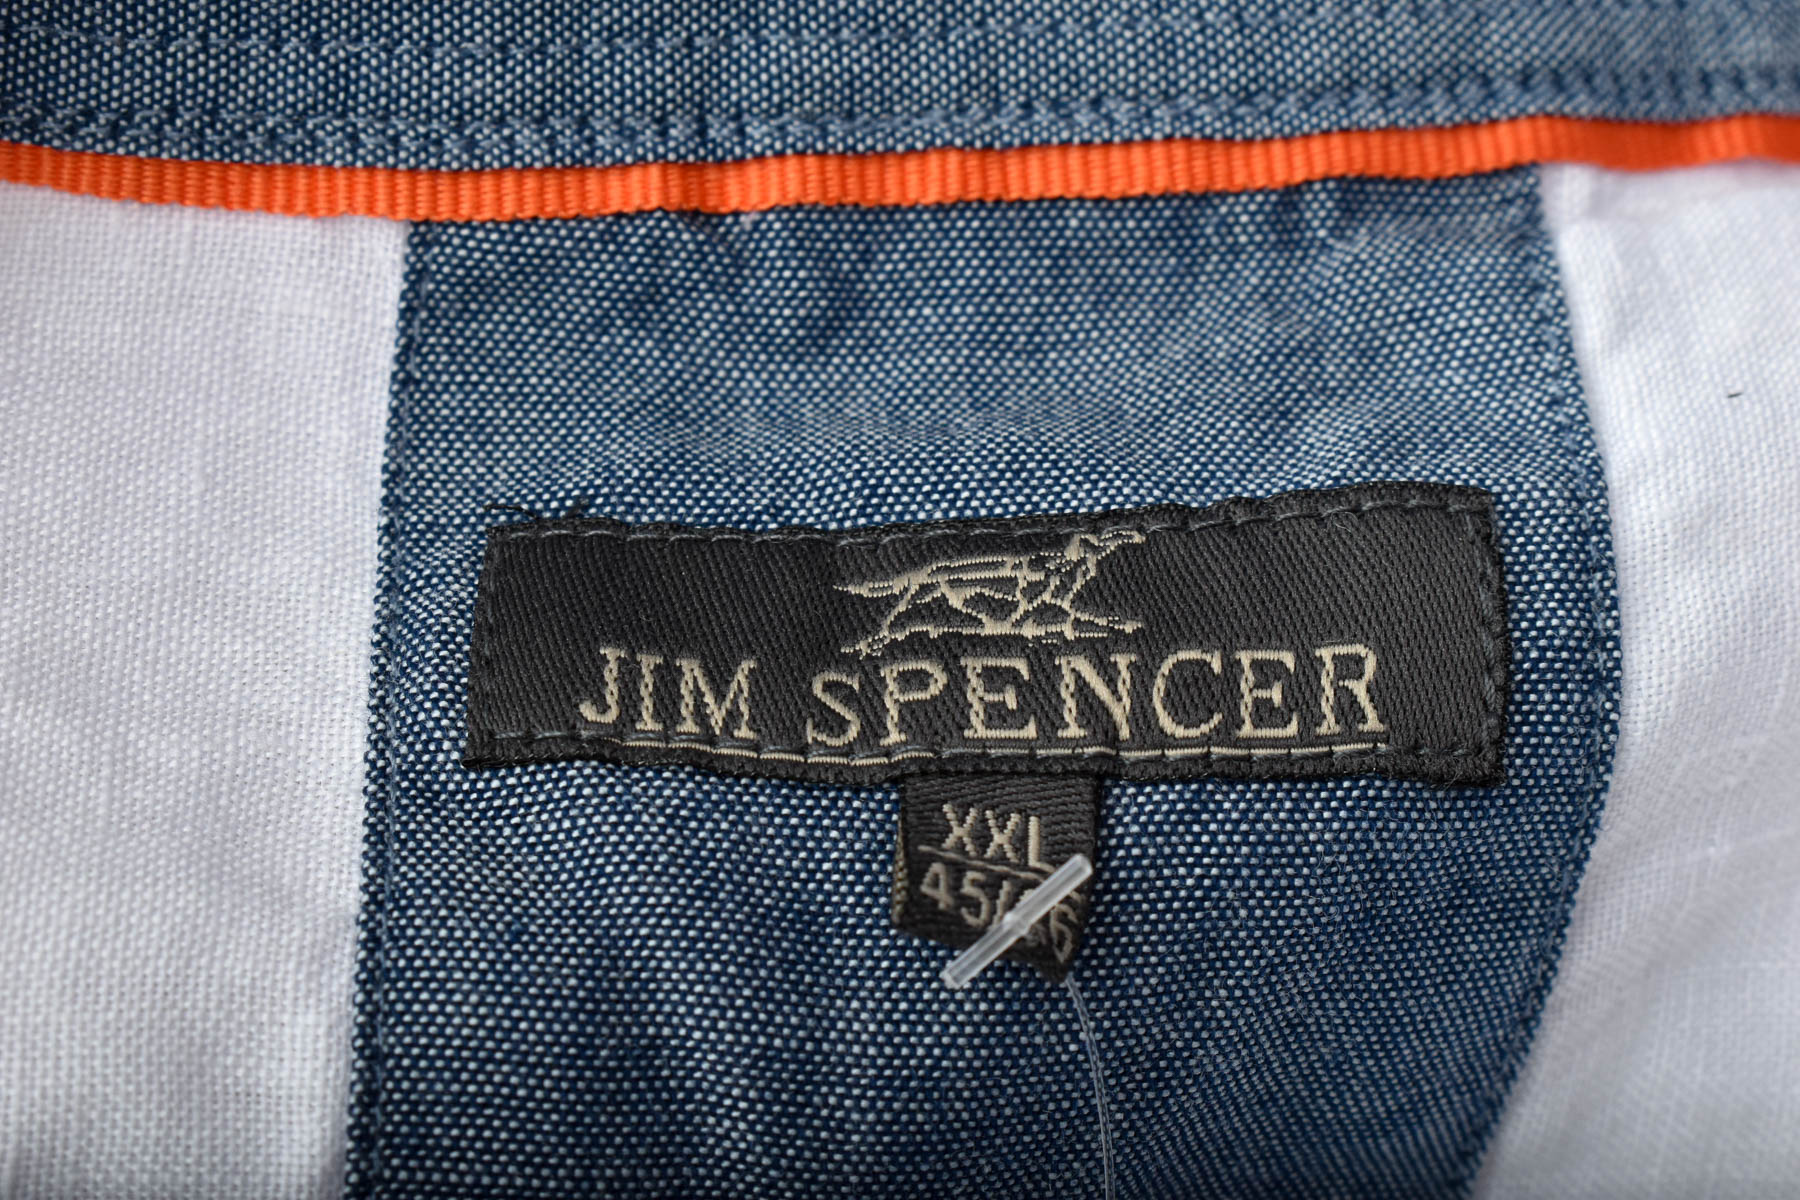 Men's shirt - Jim Spencer - 2